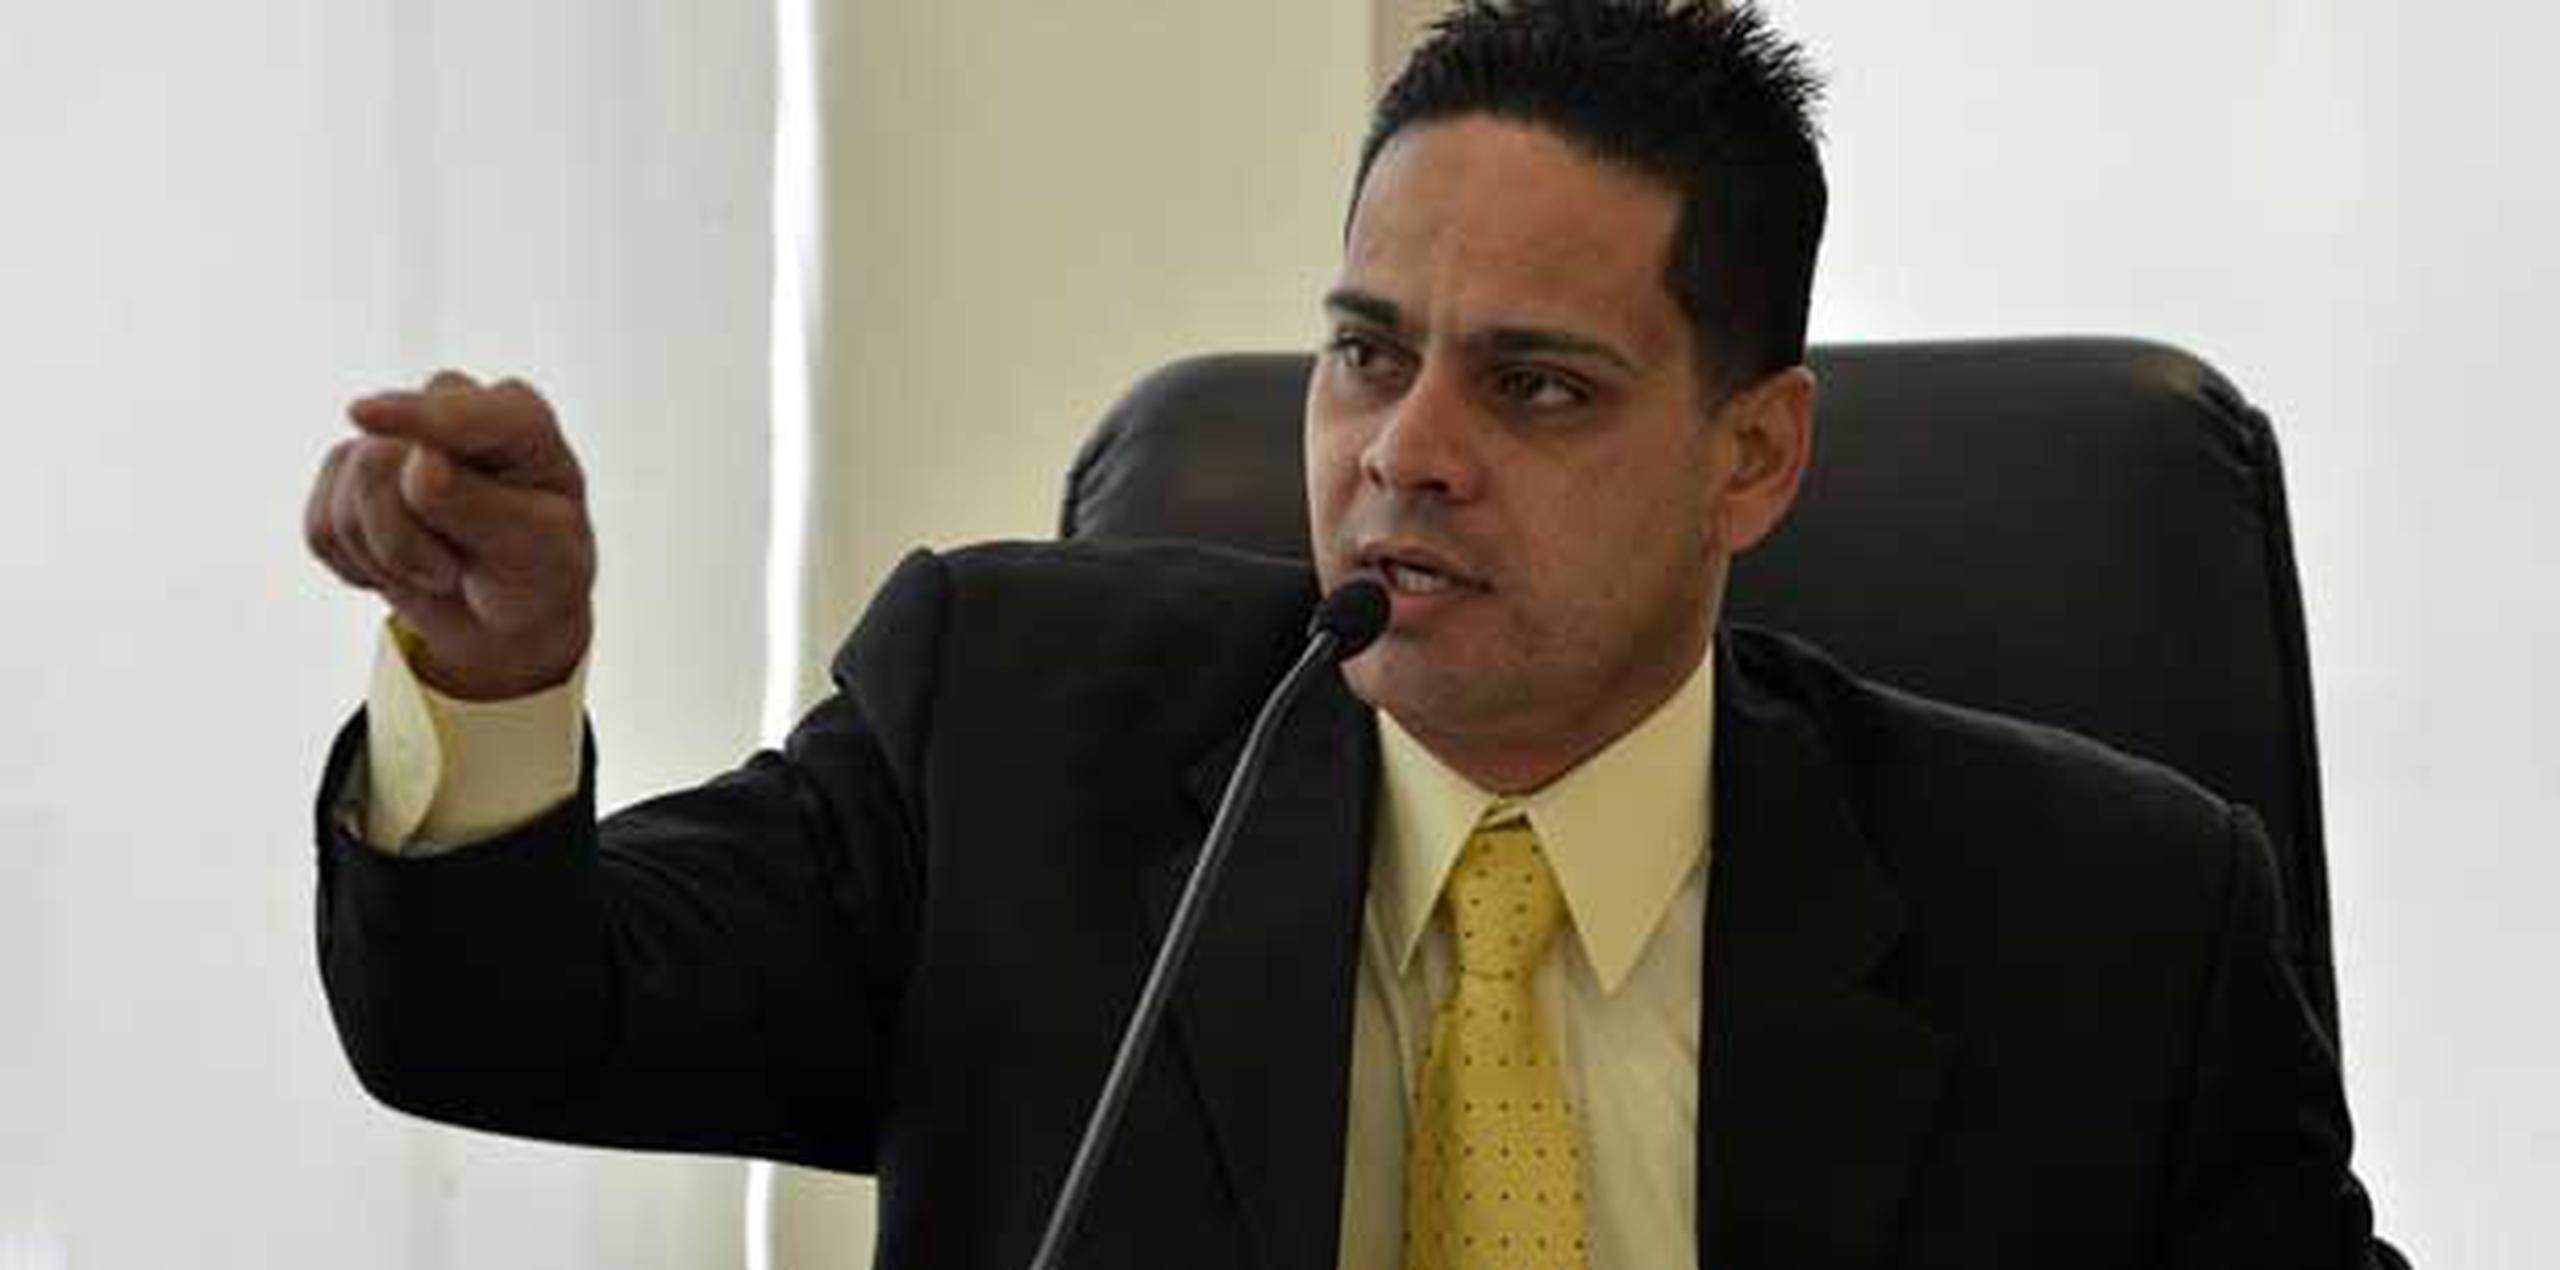 El expolicía y representante estadista, Héctor Torres Calderón acompañó del memo emitido por el teniente Francisco Santiago Andino, identificado como director de la División de Patrullas de Carretera de Guayama, el pasado 26 de marzo. (Archivo)